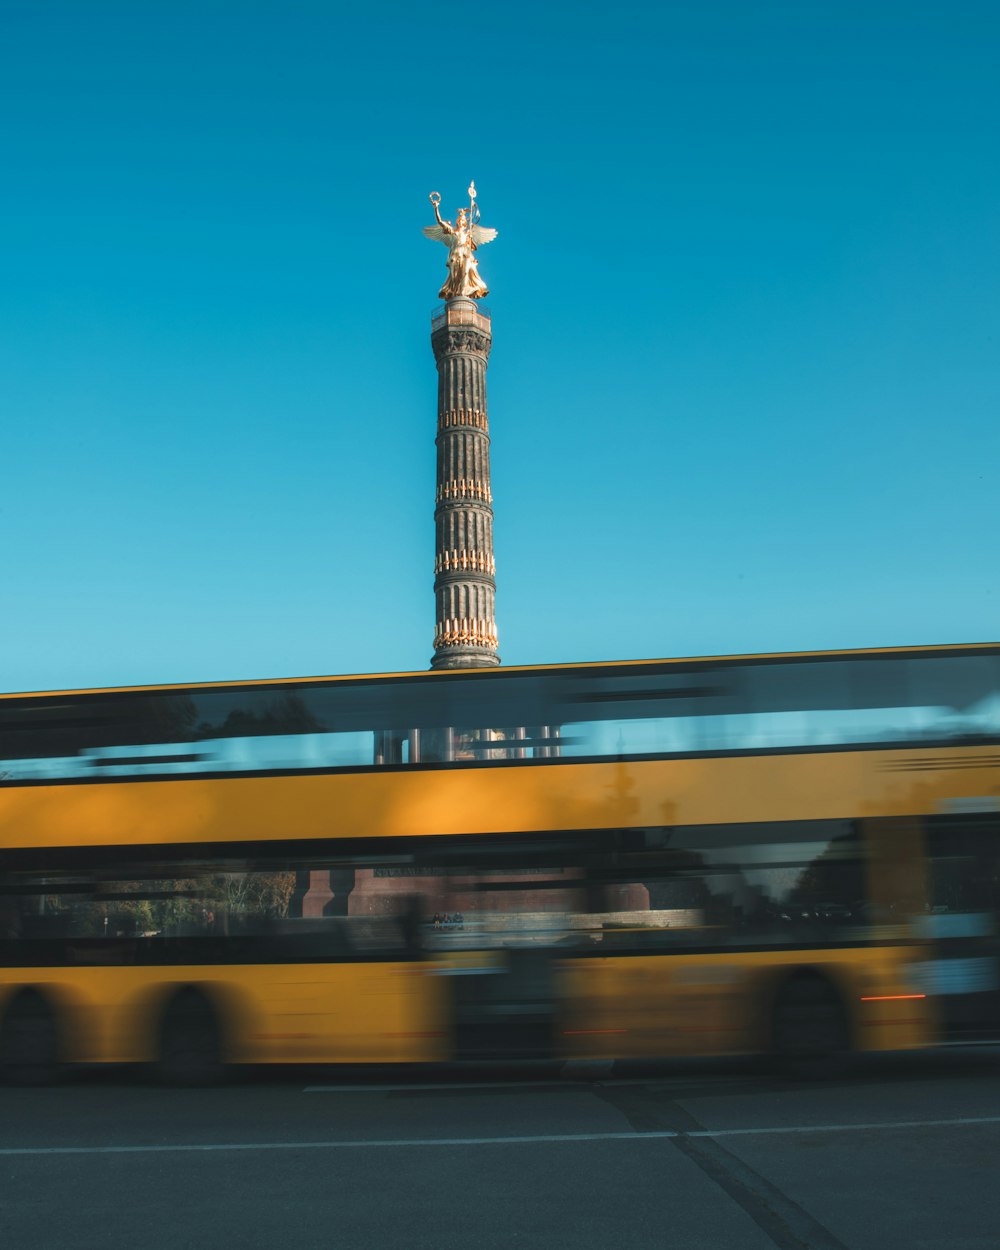 Un autobús pasando por delante de una torre alta